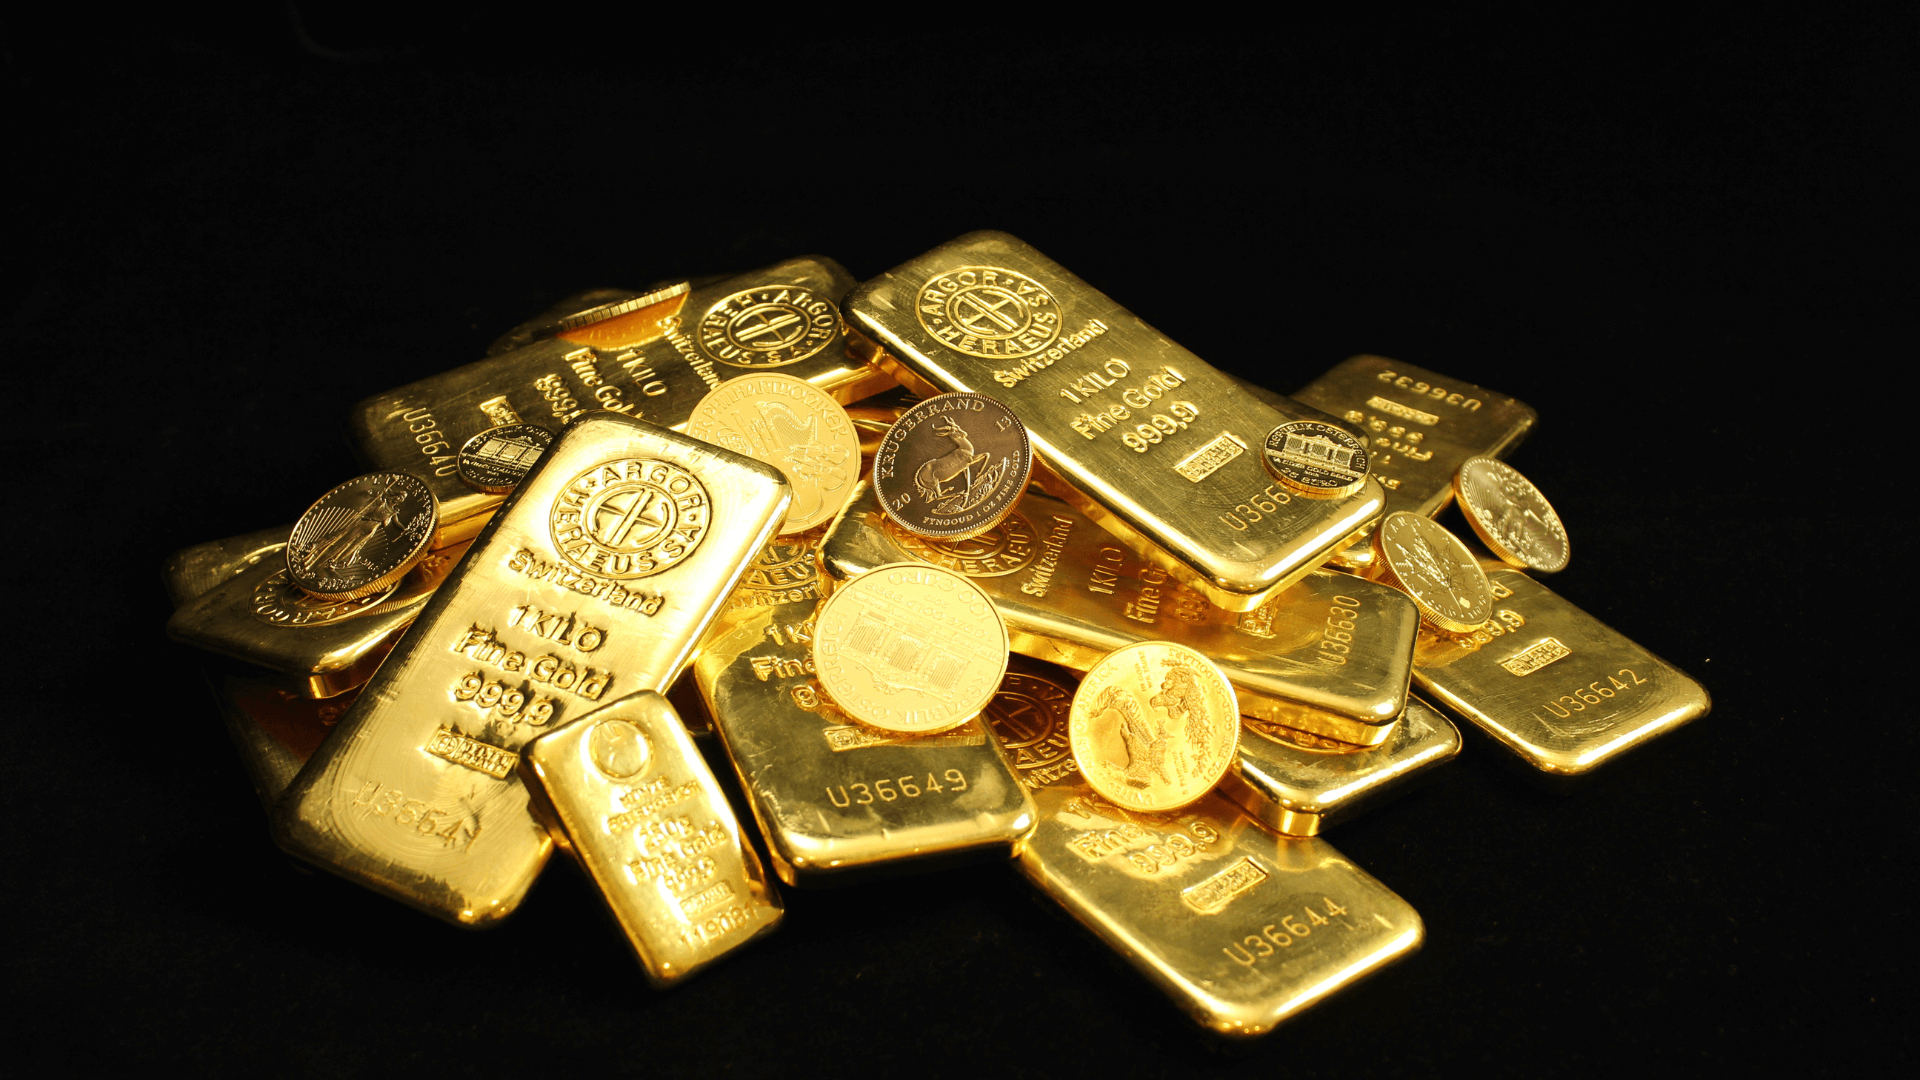 Achat d'or en suisse les avantages